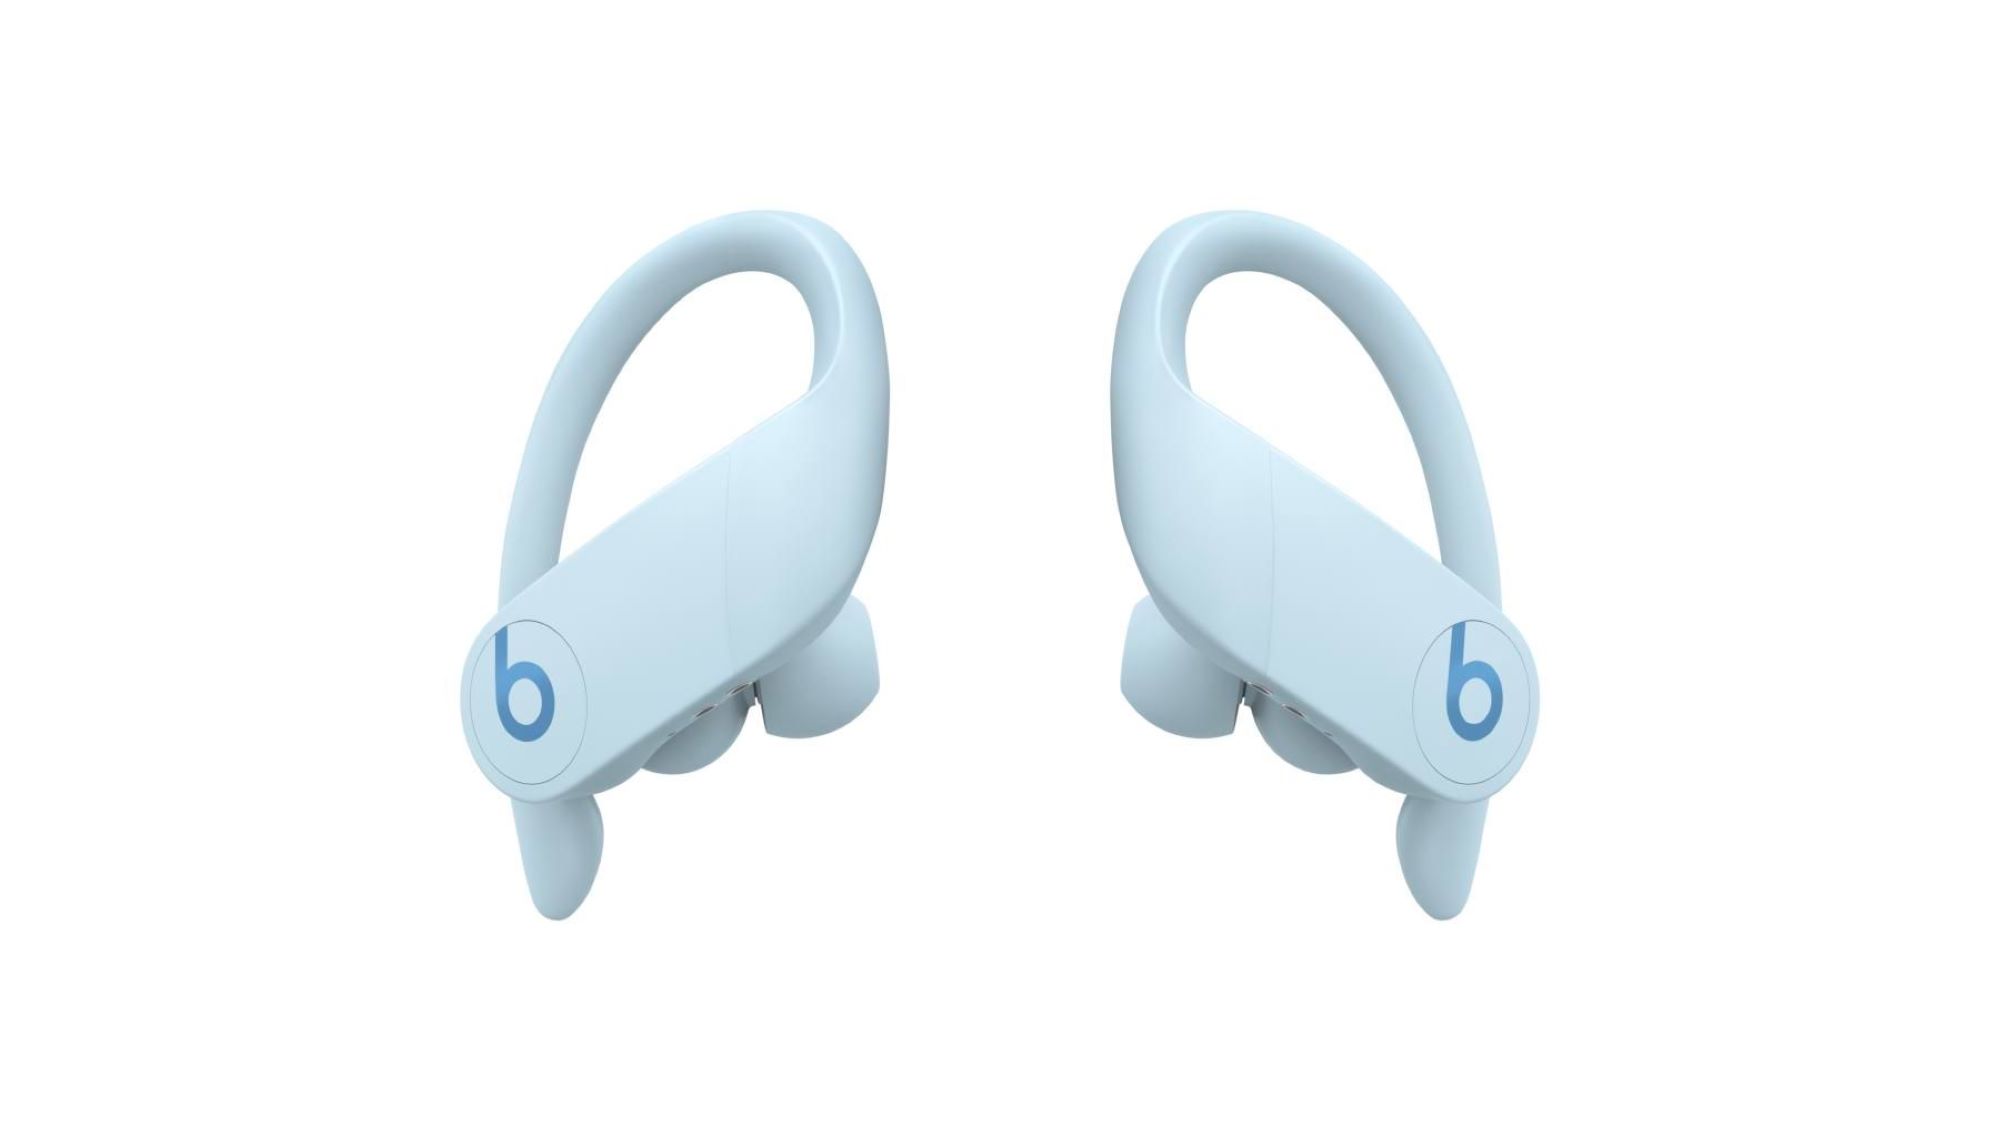 The Beats Powerbeats Pro wireless earbuds in glacier blue.